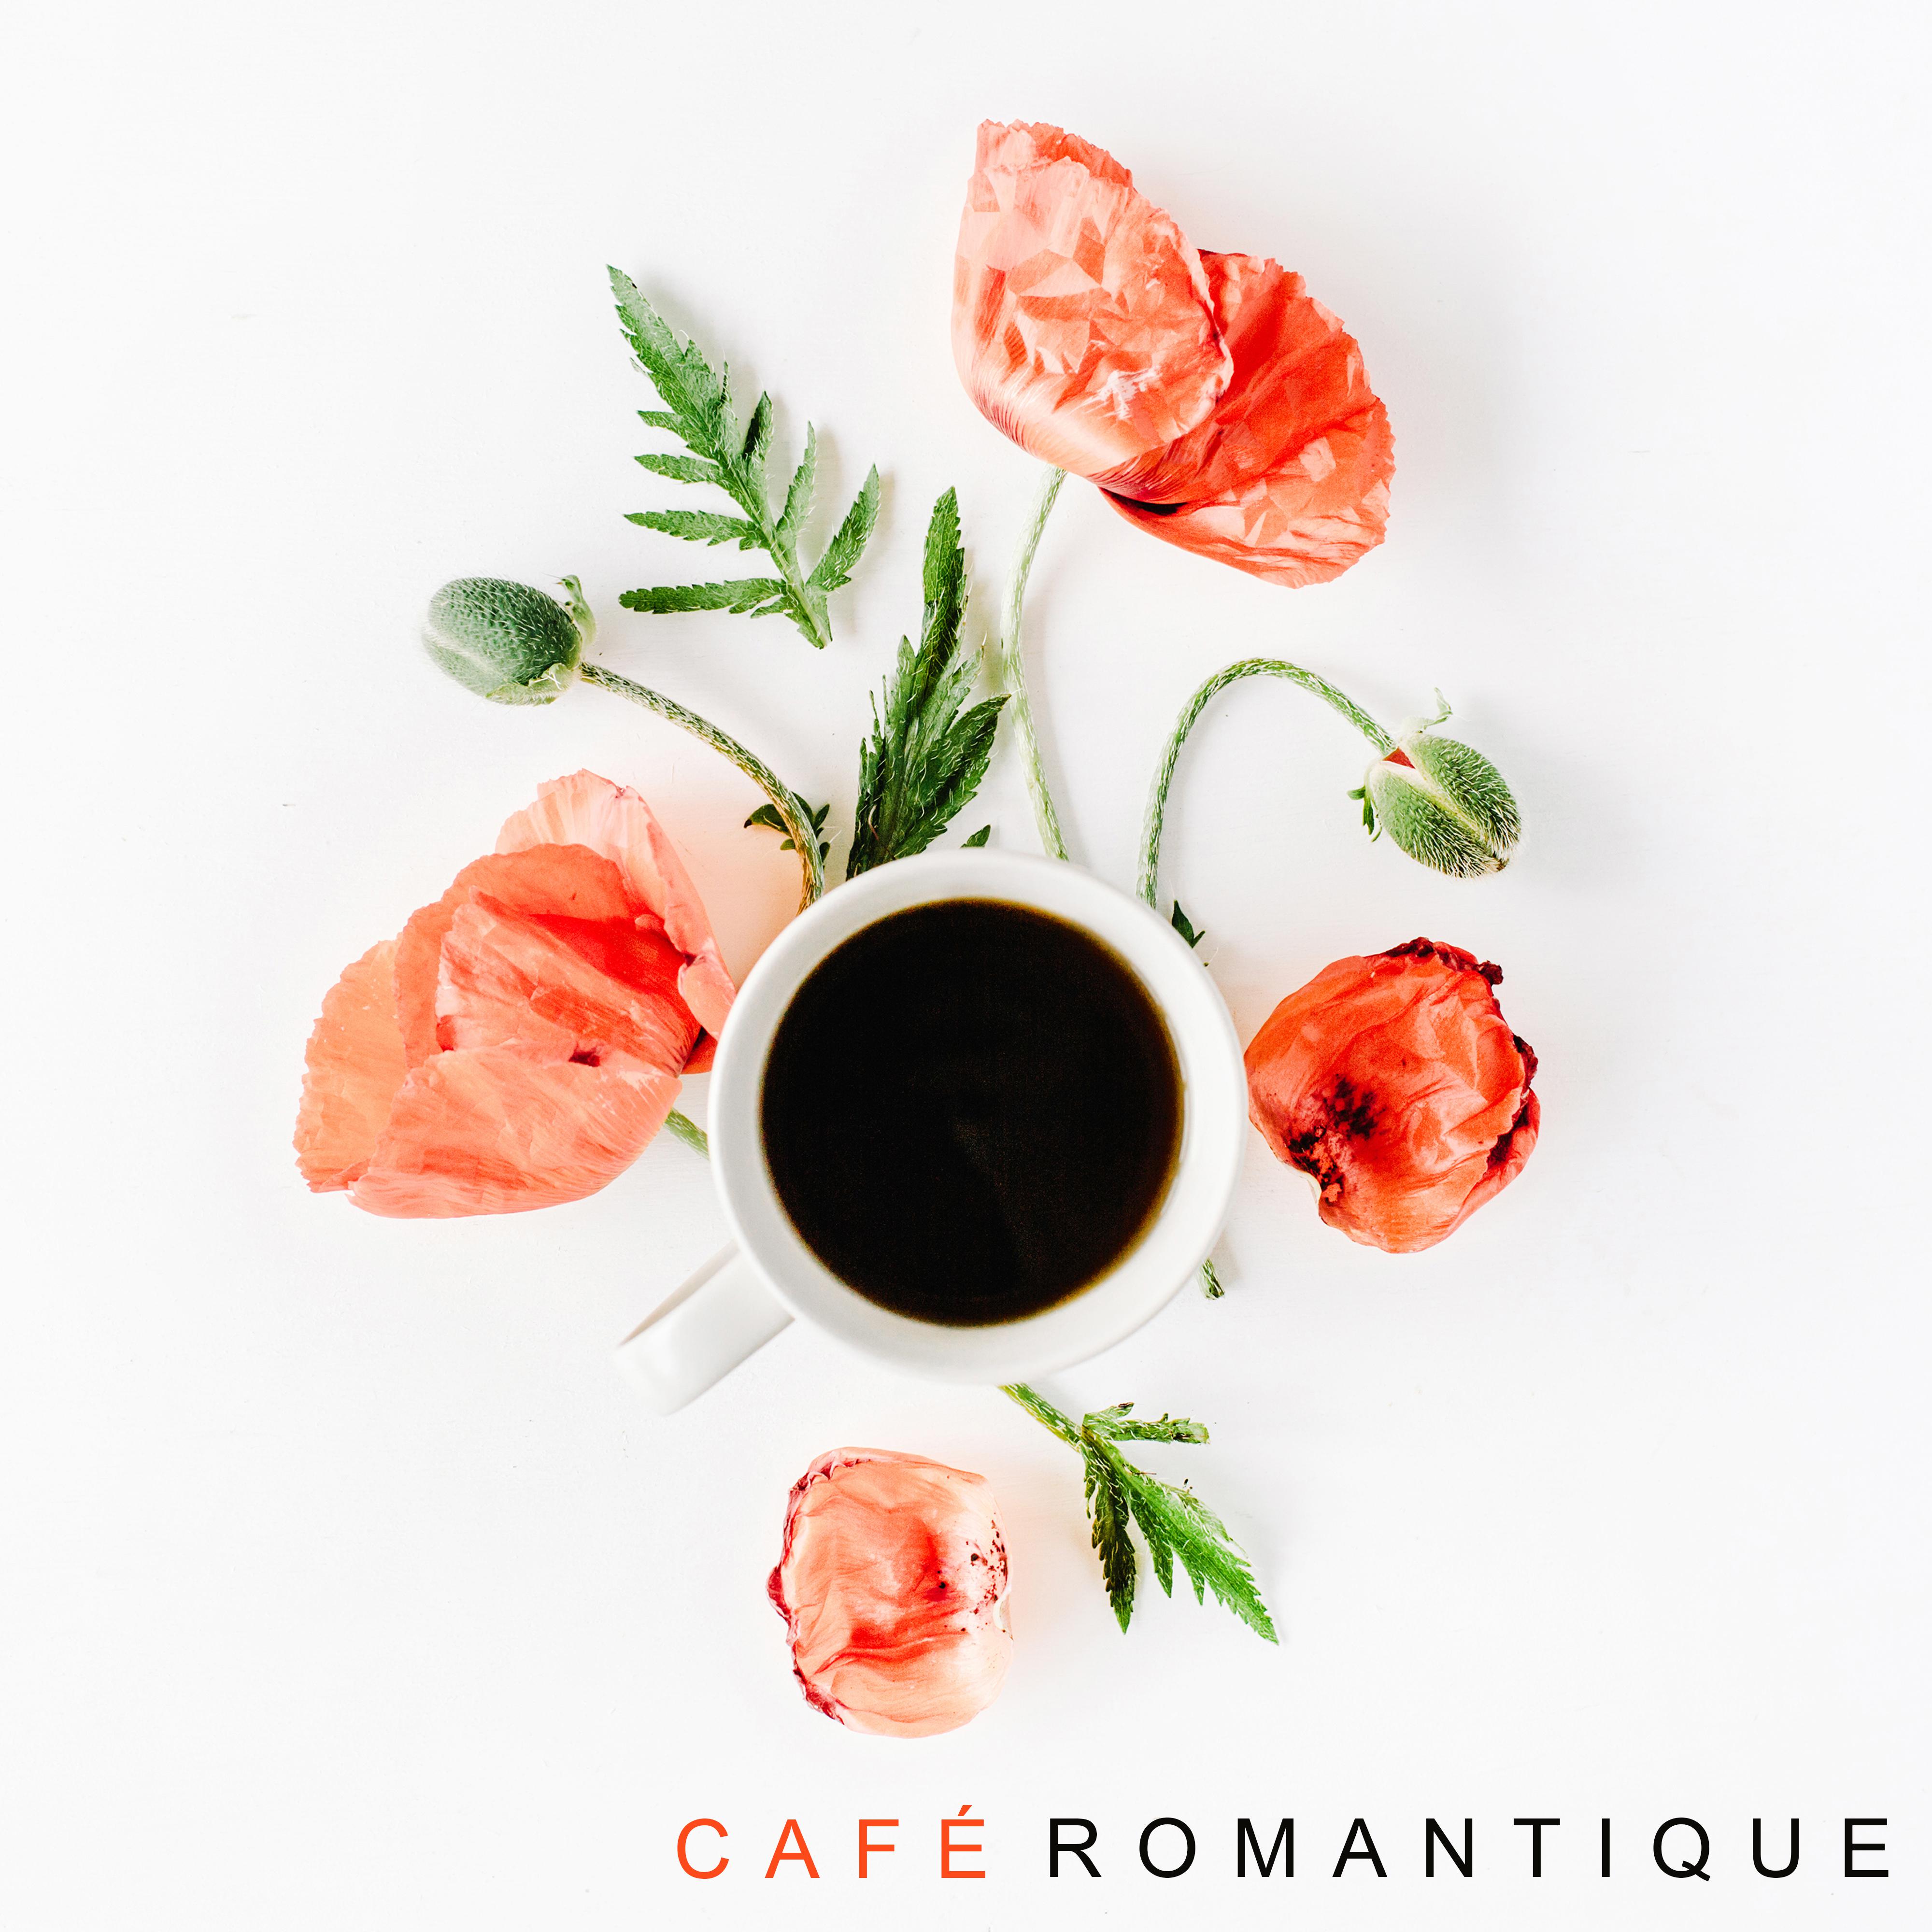 Café romantique: Sons instrumentaux pour les amoureux, Jazz ambiant